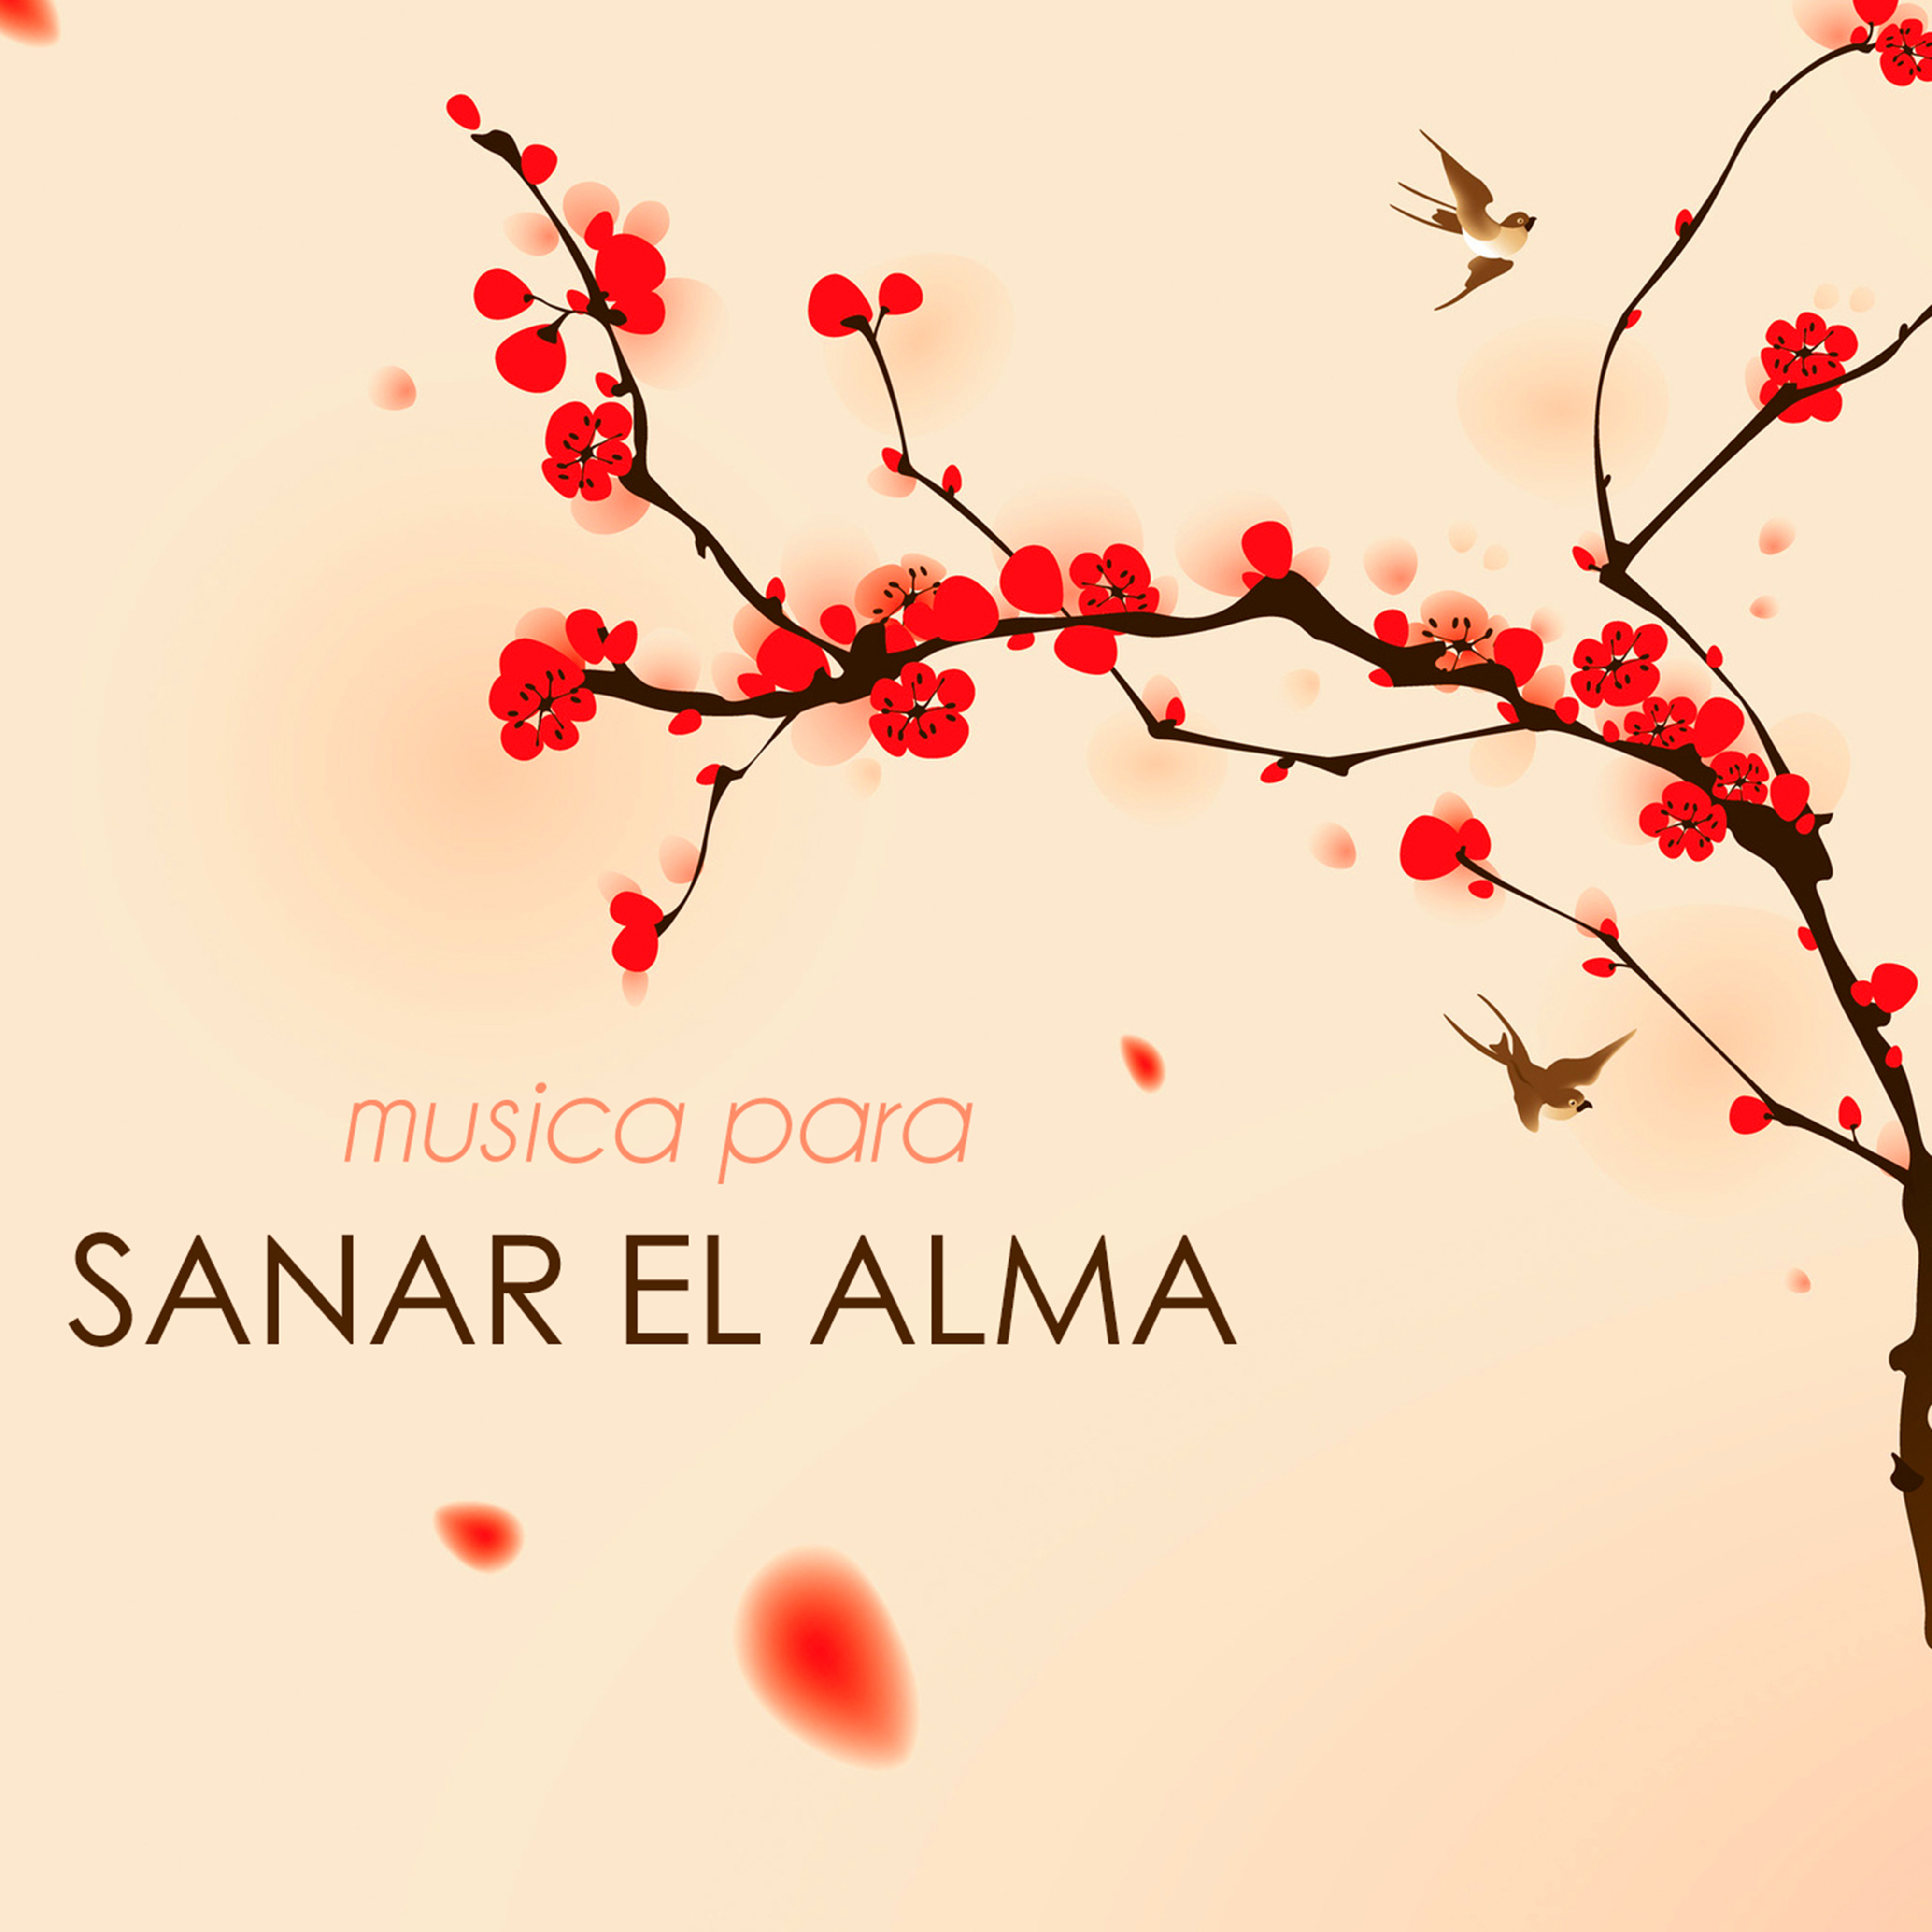 Musica Para Sanar El Alma - Canciones De Reiki & Musica Para Meditacion